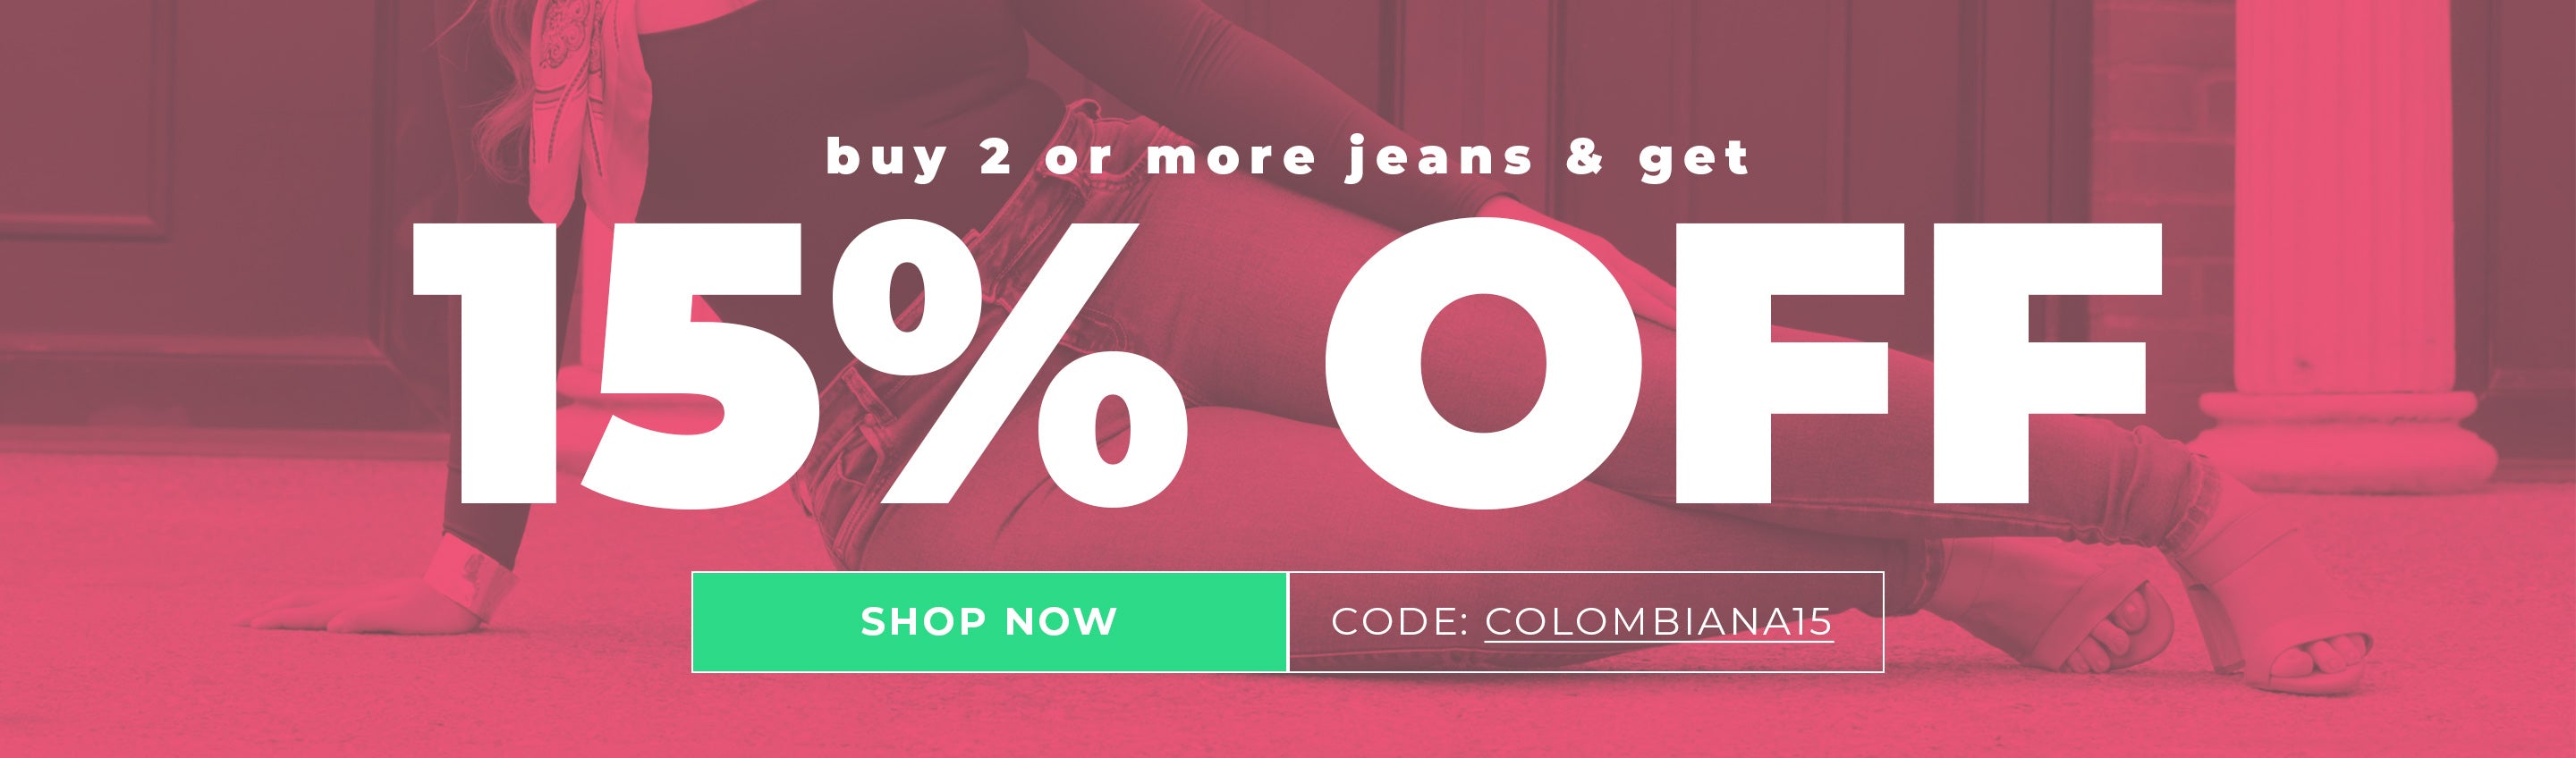 JeansCol Boutique - Jeans 💯% Colombianos 🇨🇴 😍 Diseño fresco